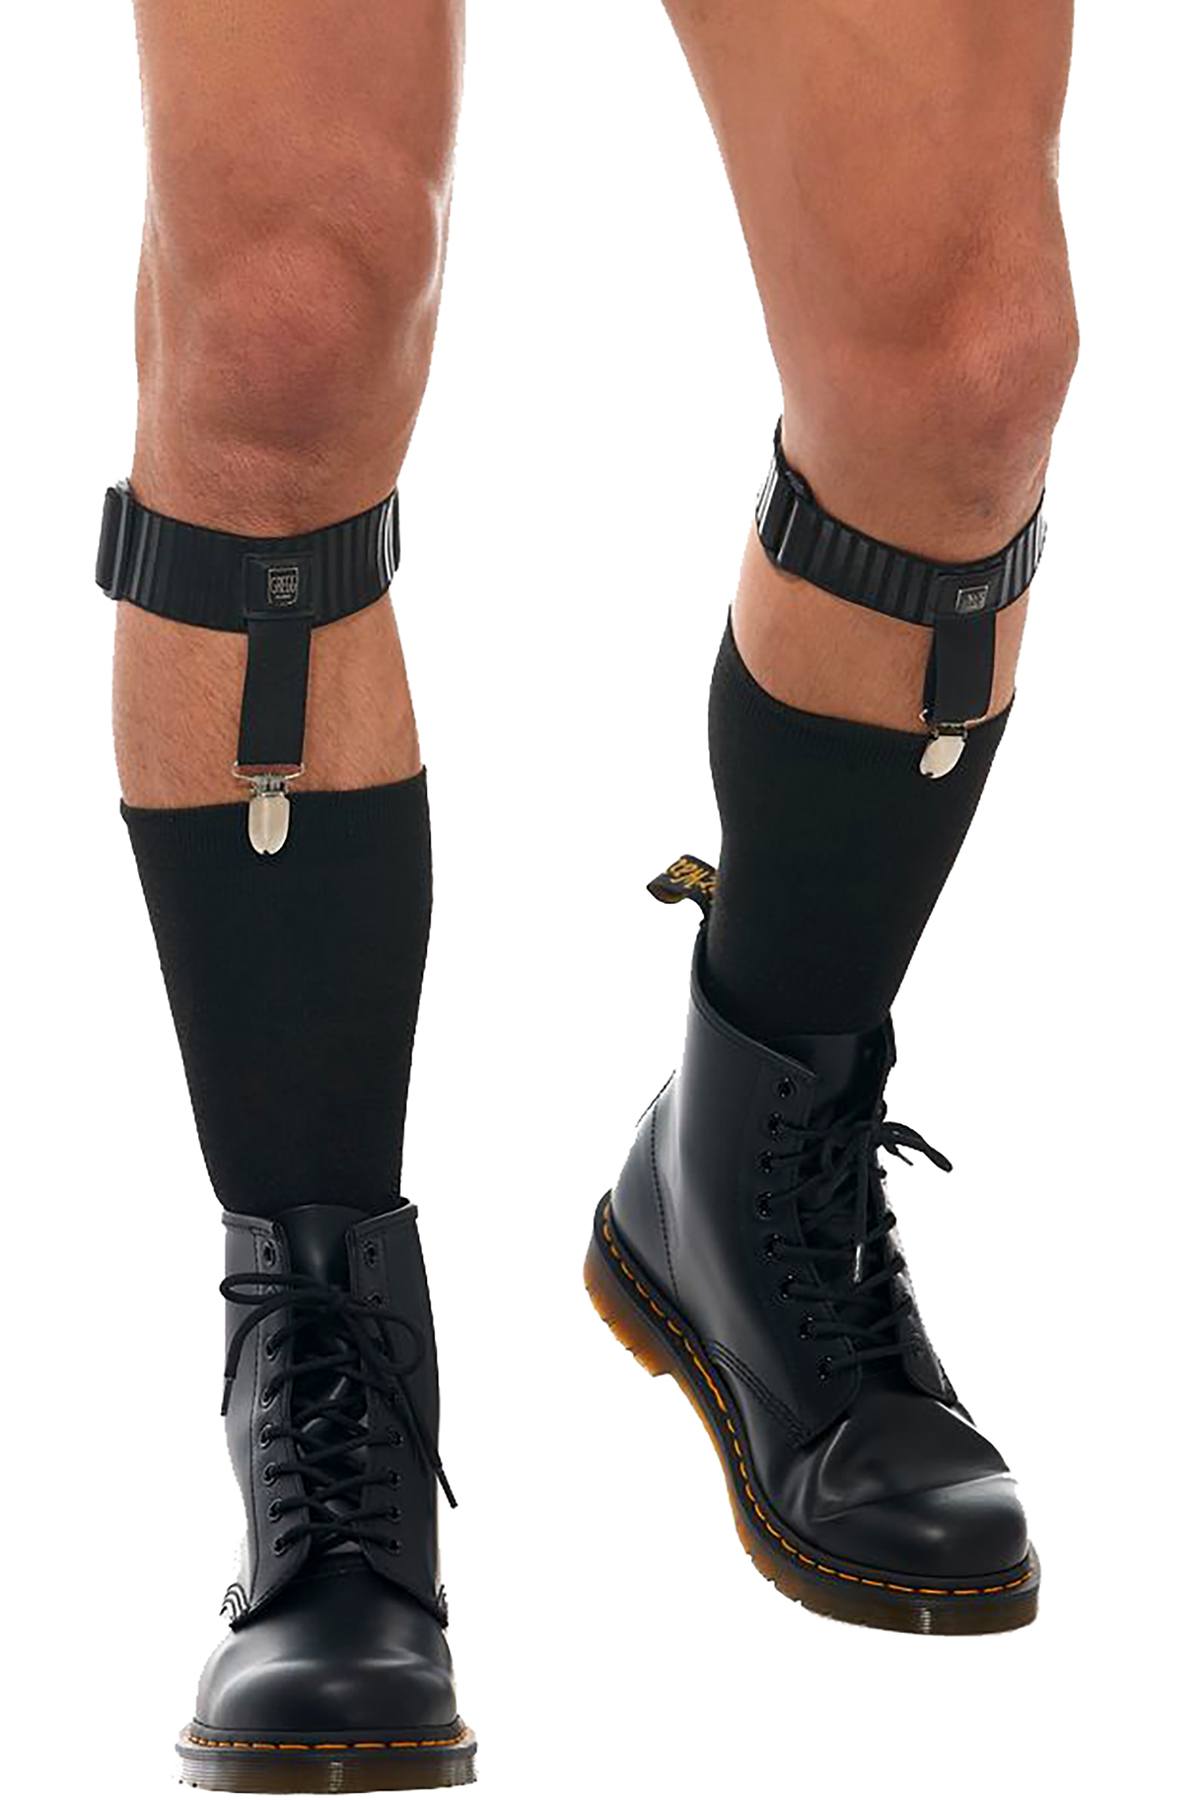 Gregg Homme Black Strap Sock Garter